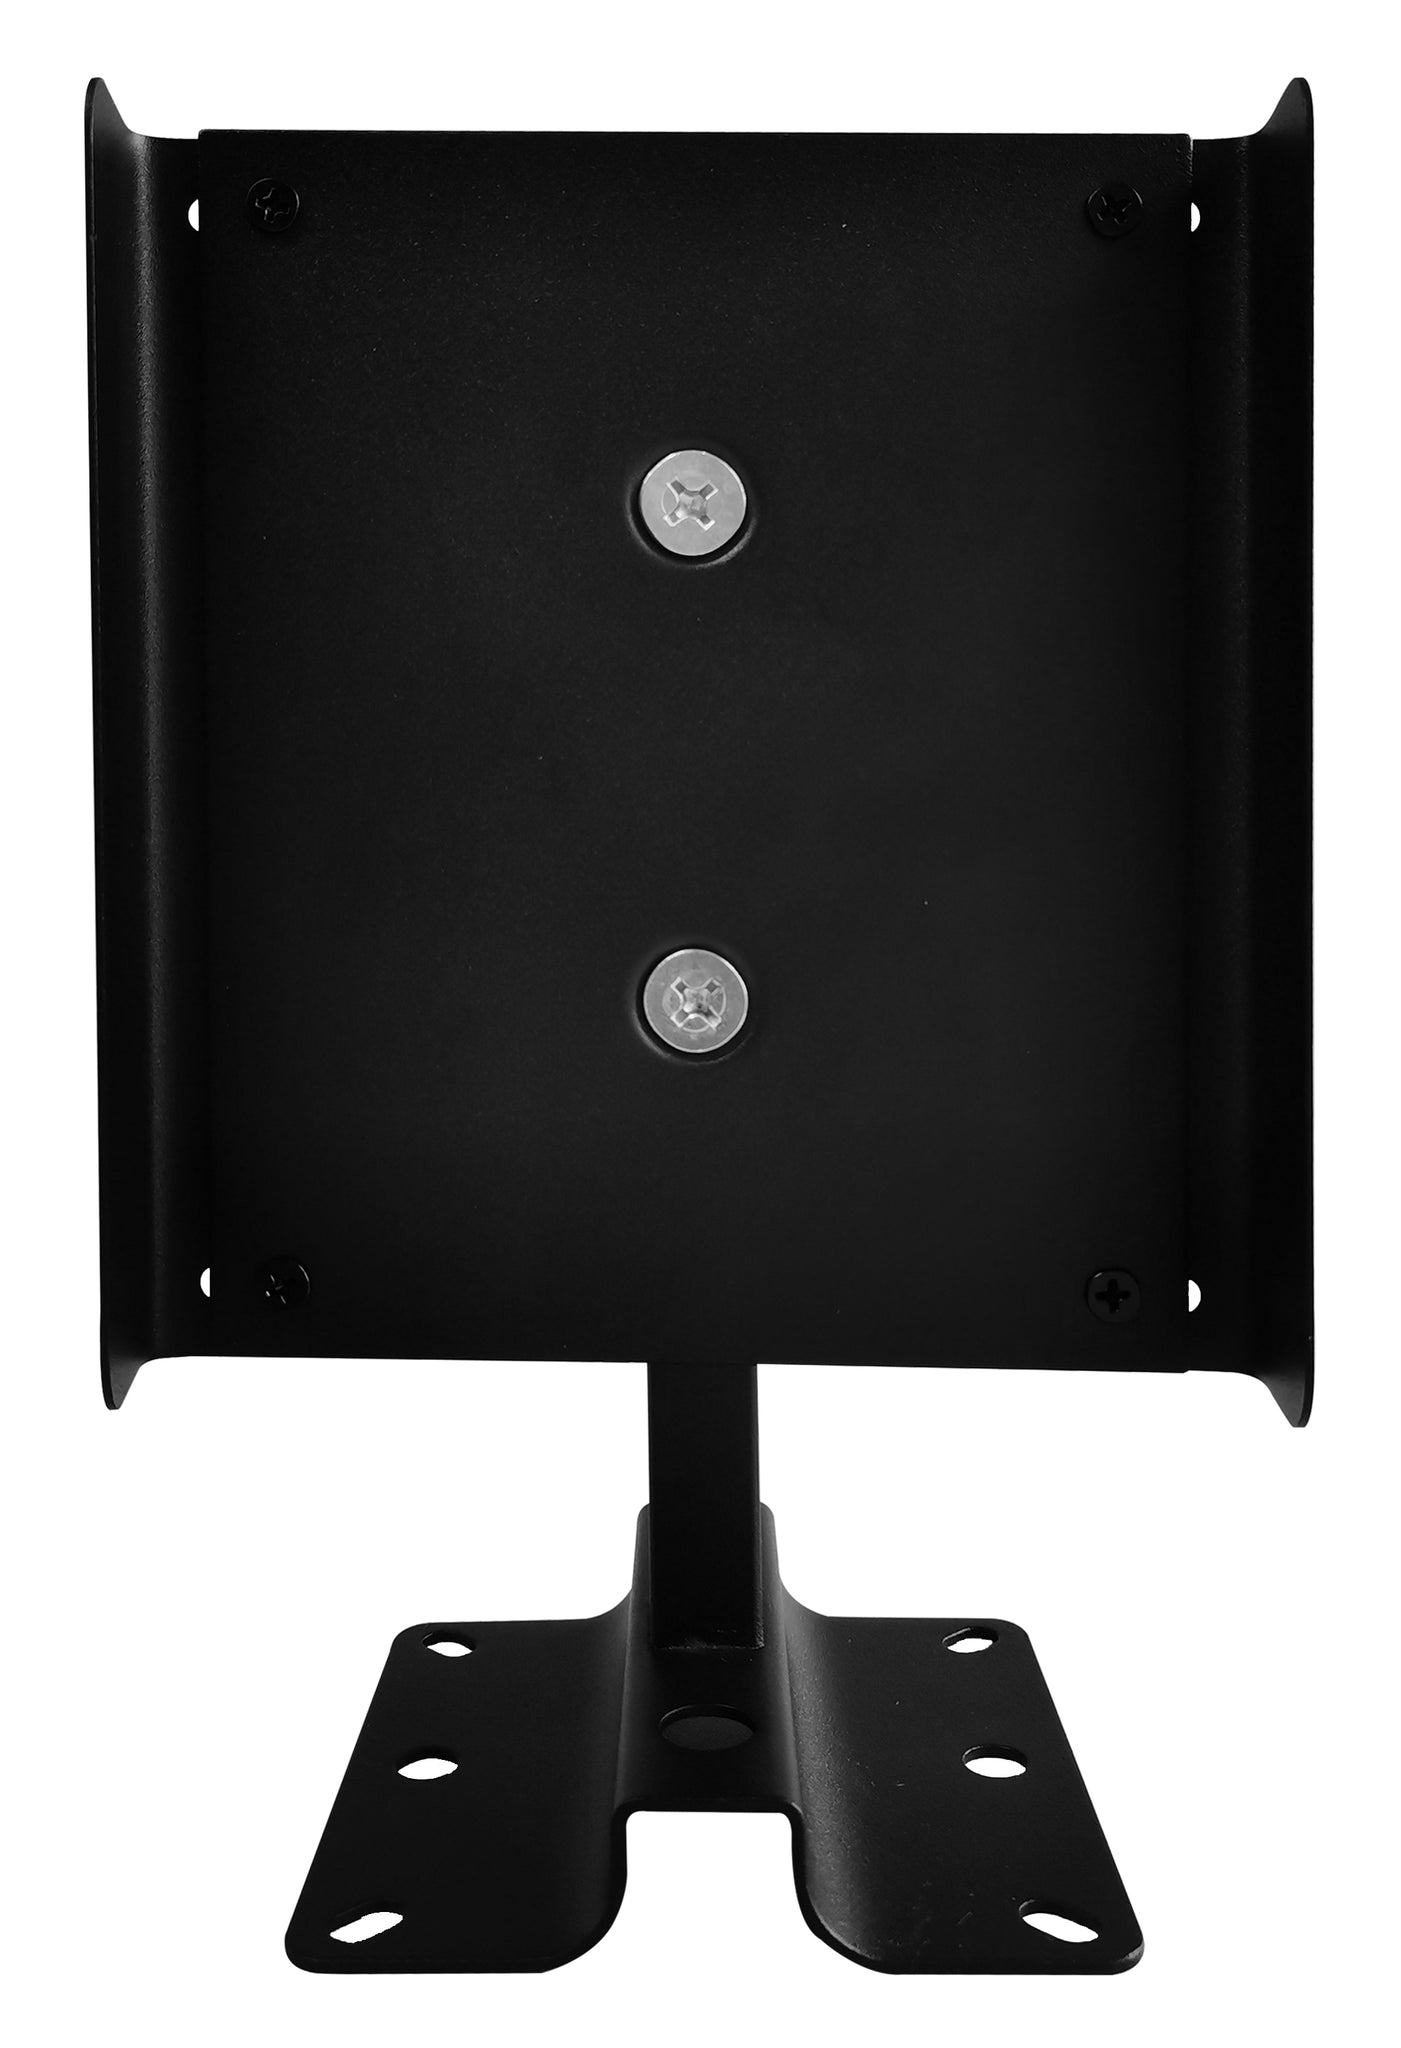 Edifier SS05 Speaker Wall Mount Brackets - Set Of 2 - Black